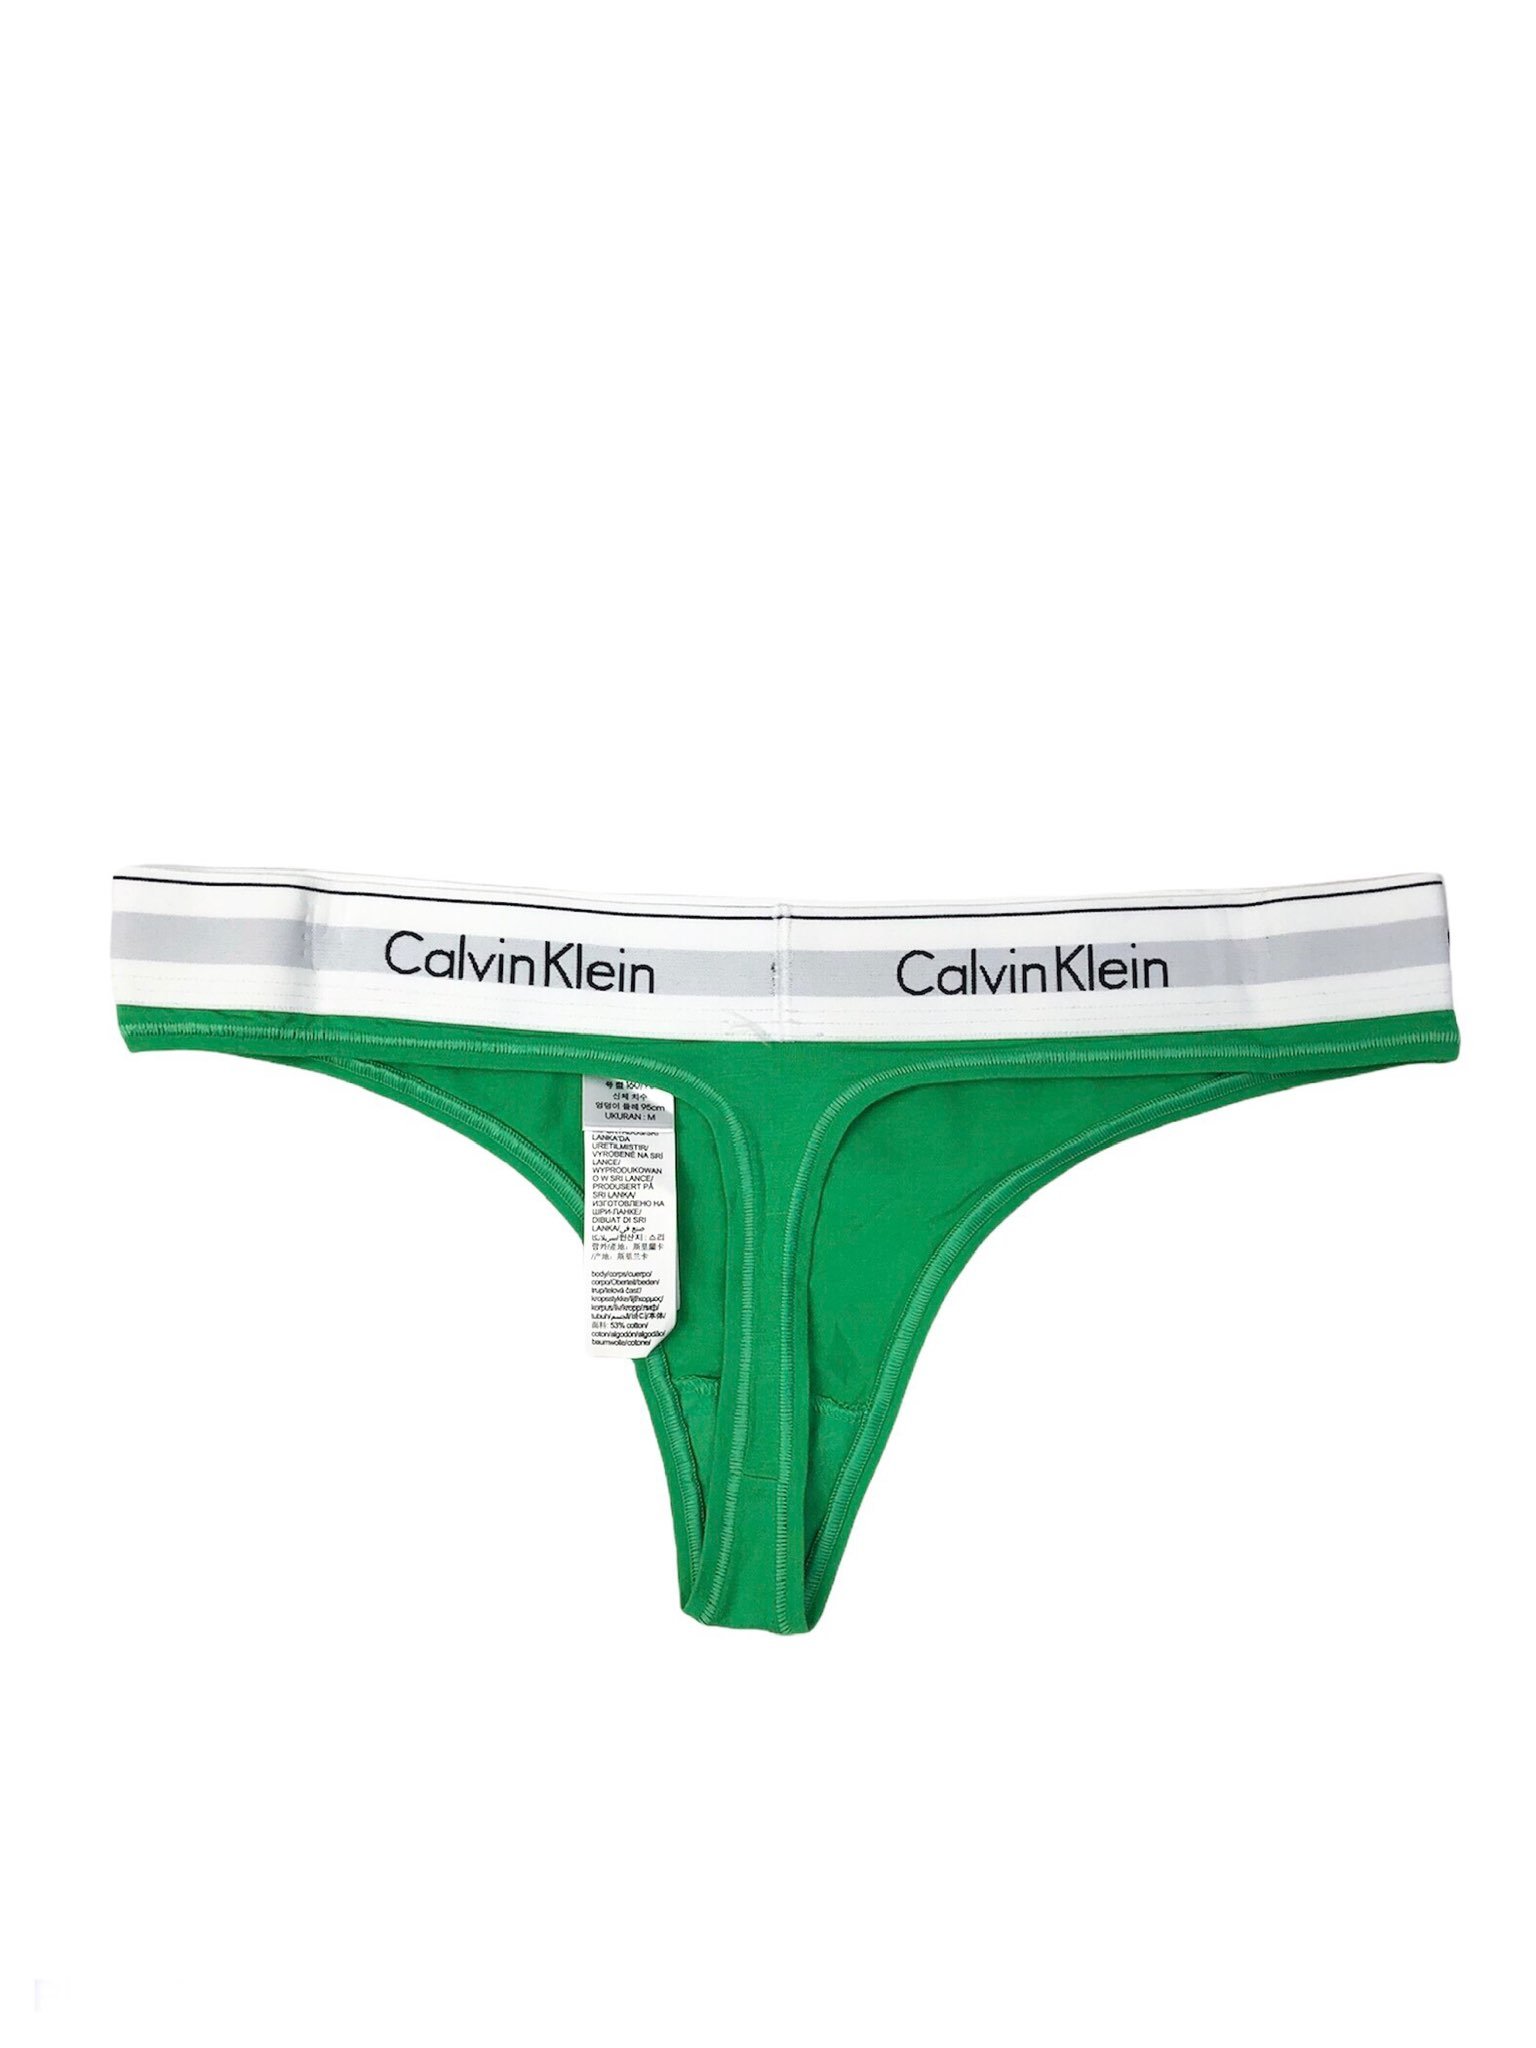 Tanga Calvin Klein color verde de dama 100% original y nuevo